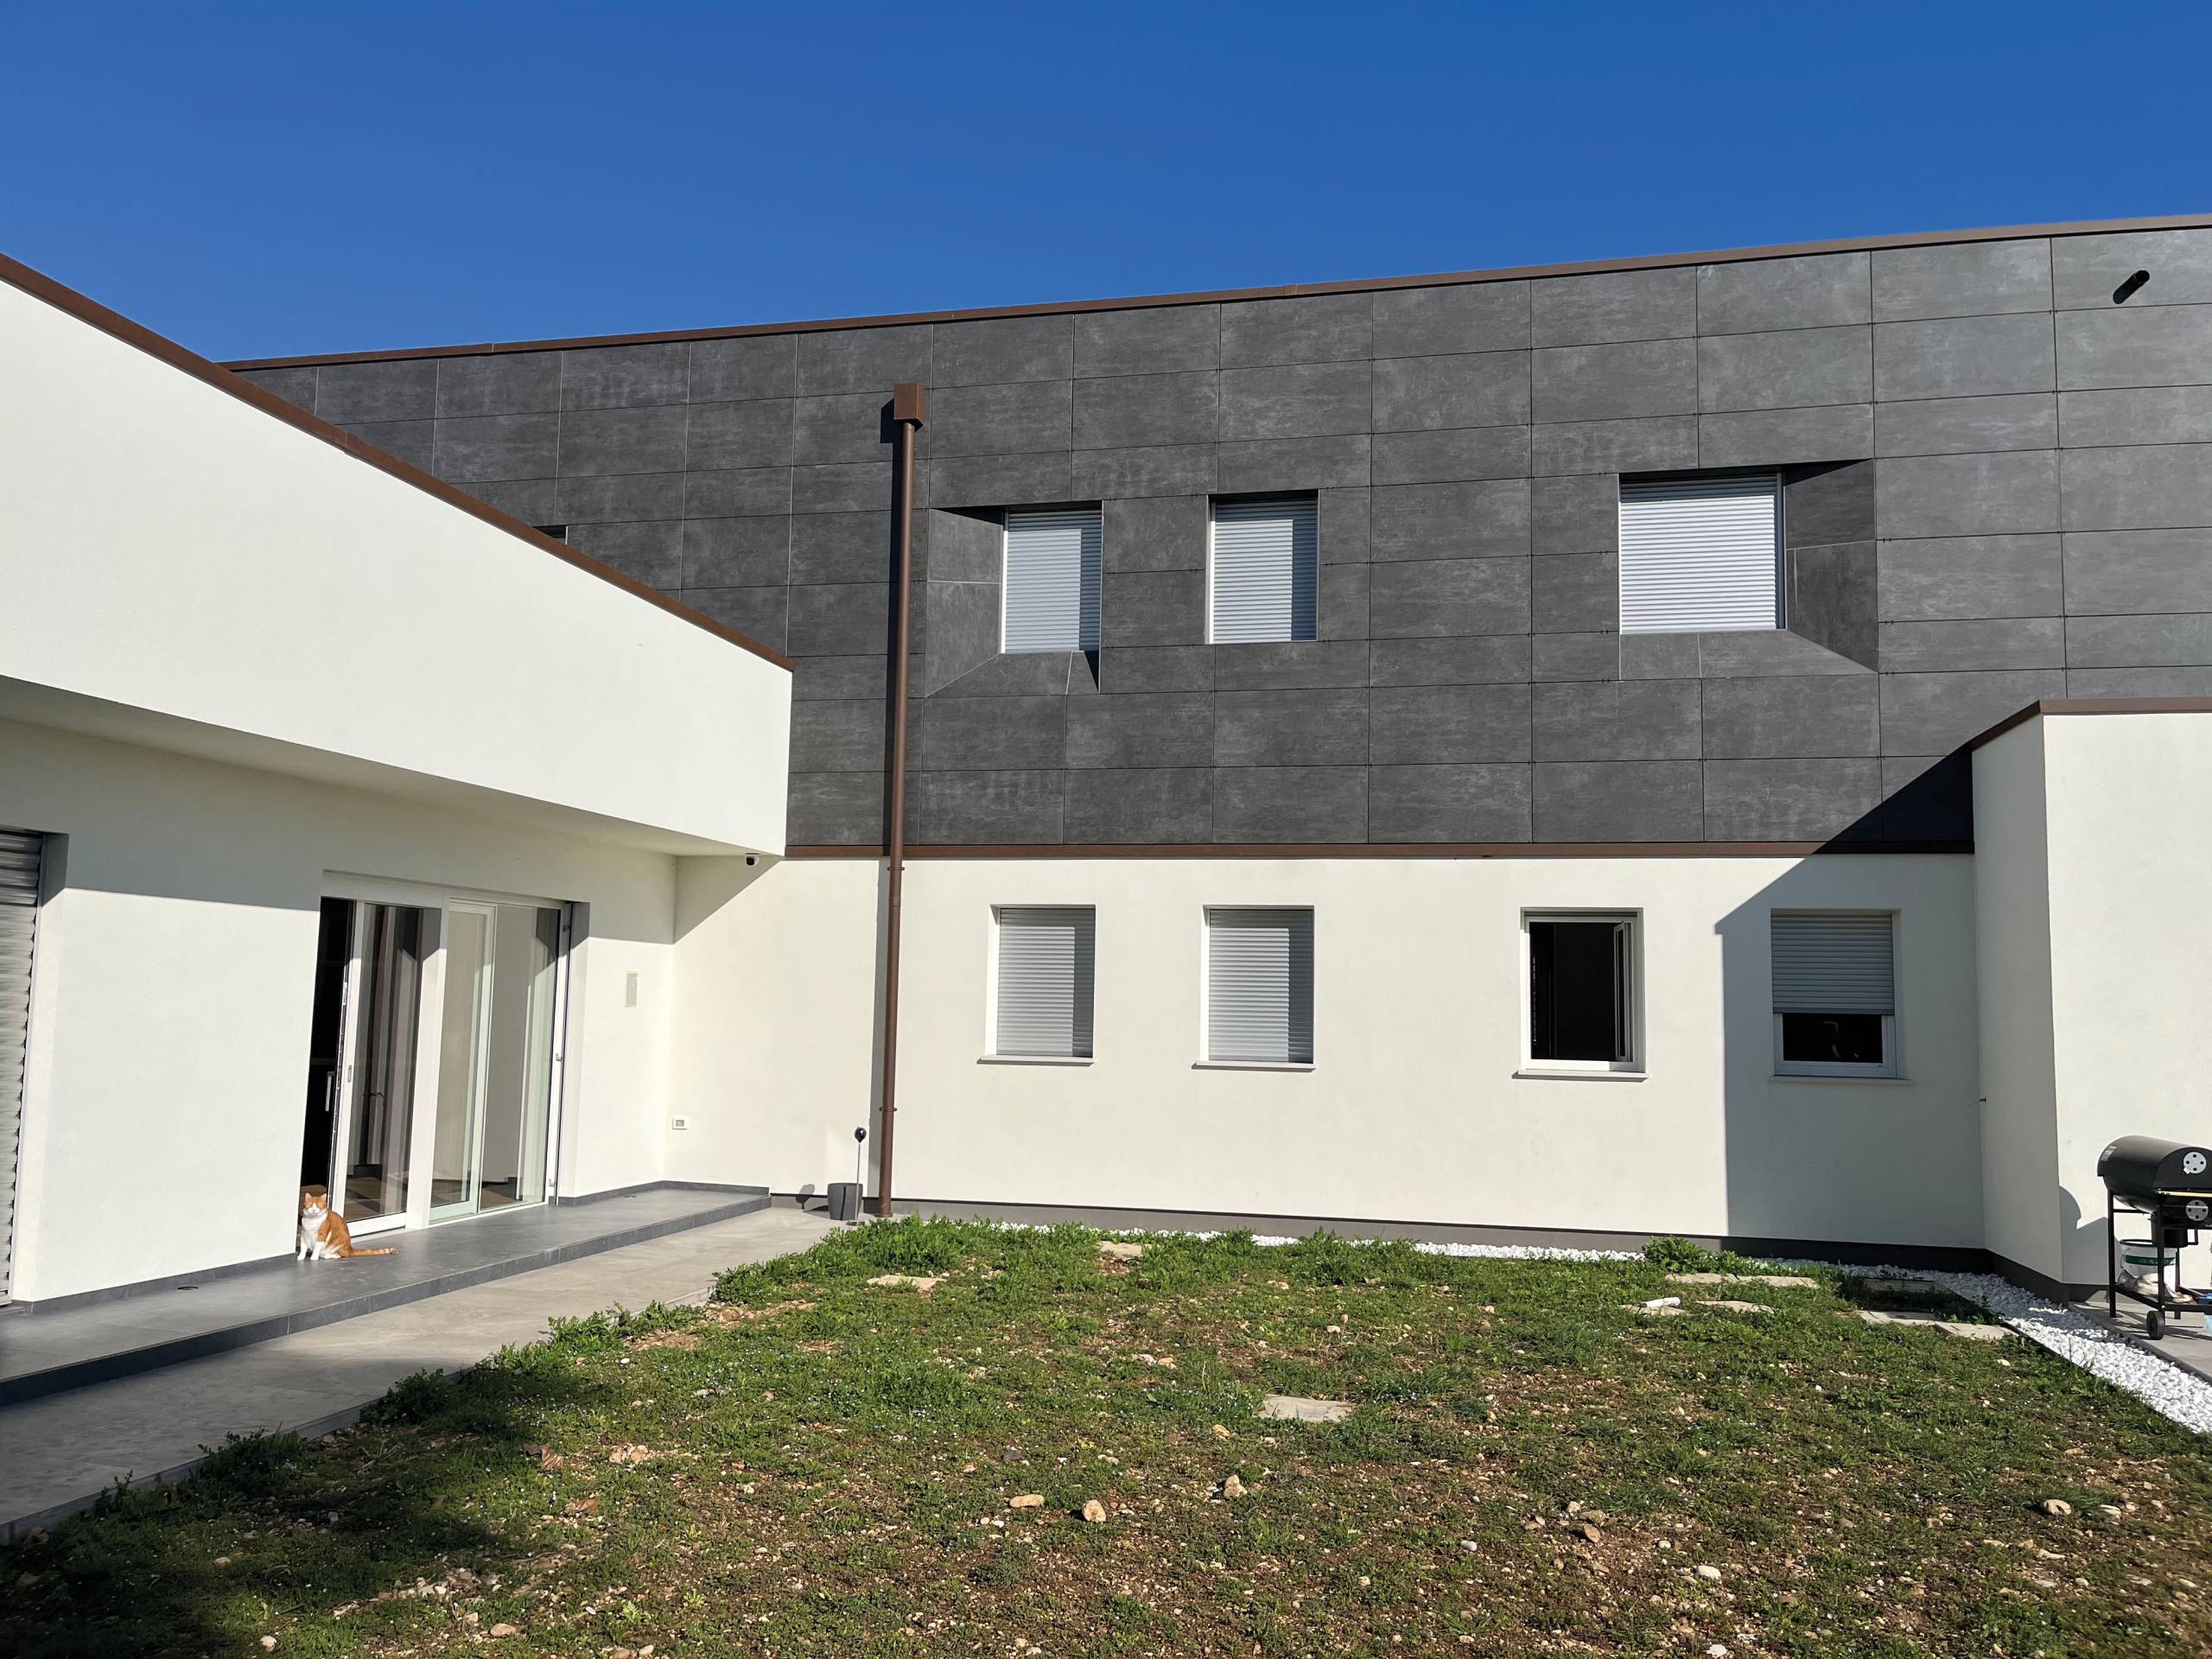 Isolamento termico Isotec Parete per nuova villa a Castelfranco Veneto.